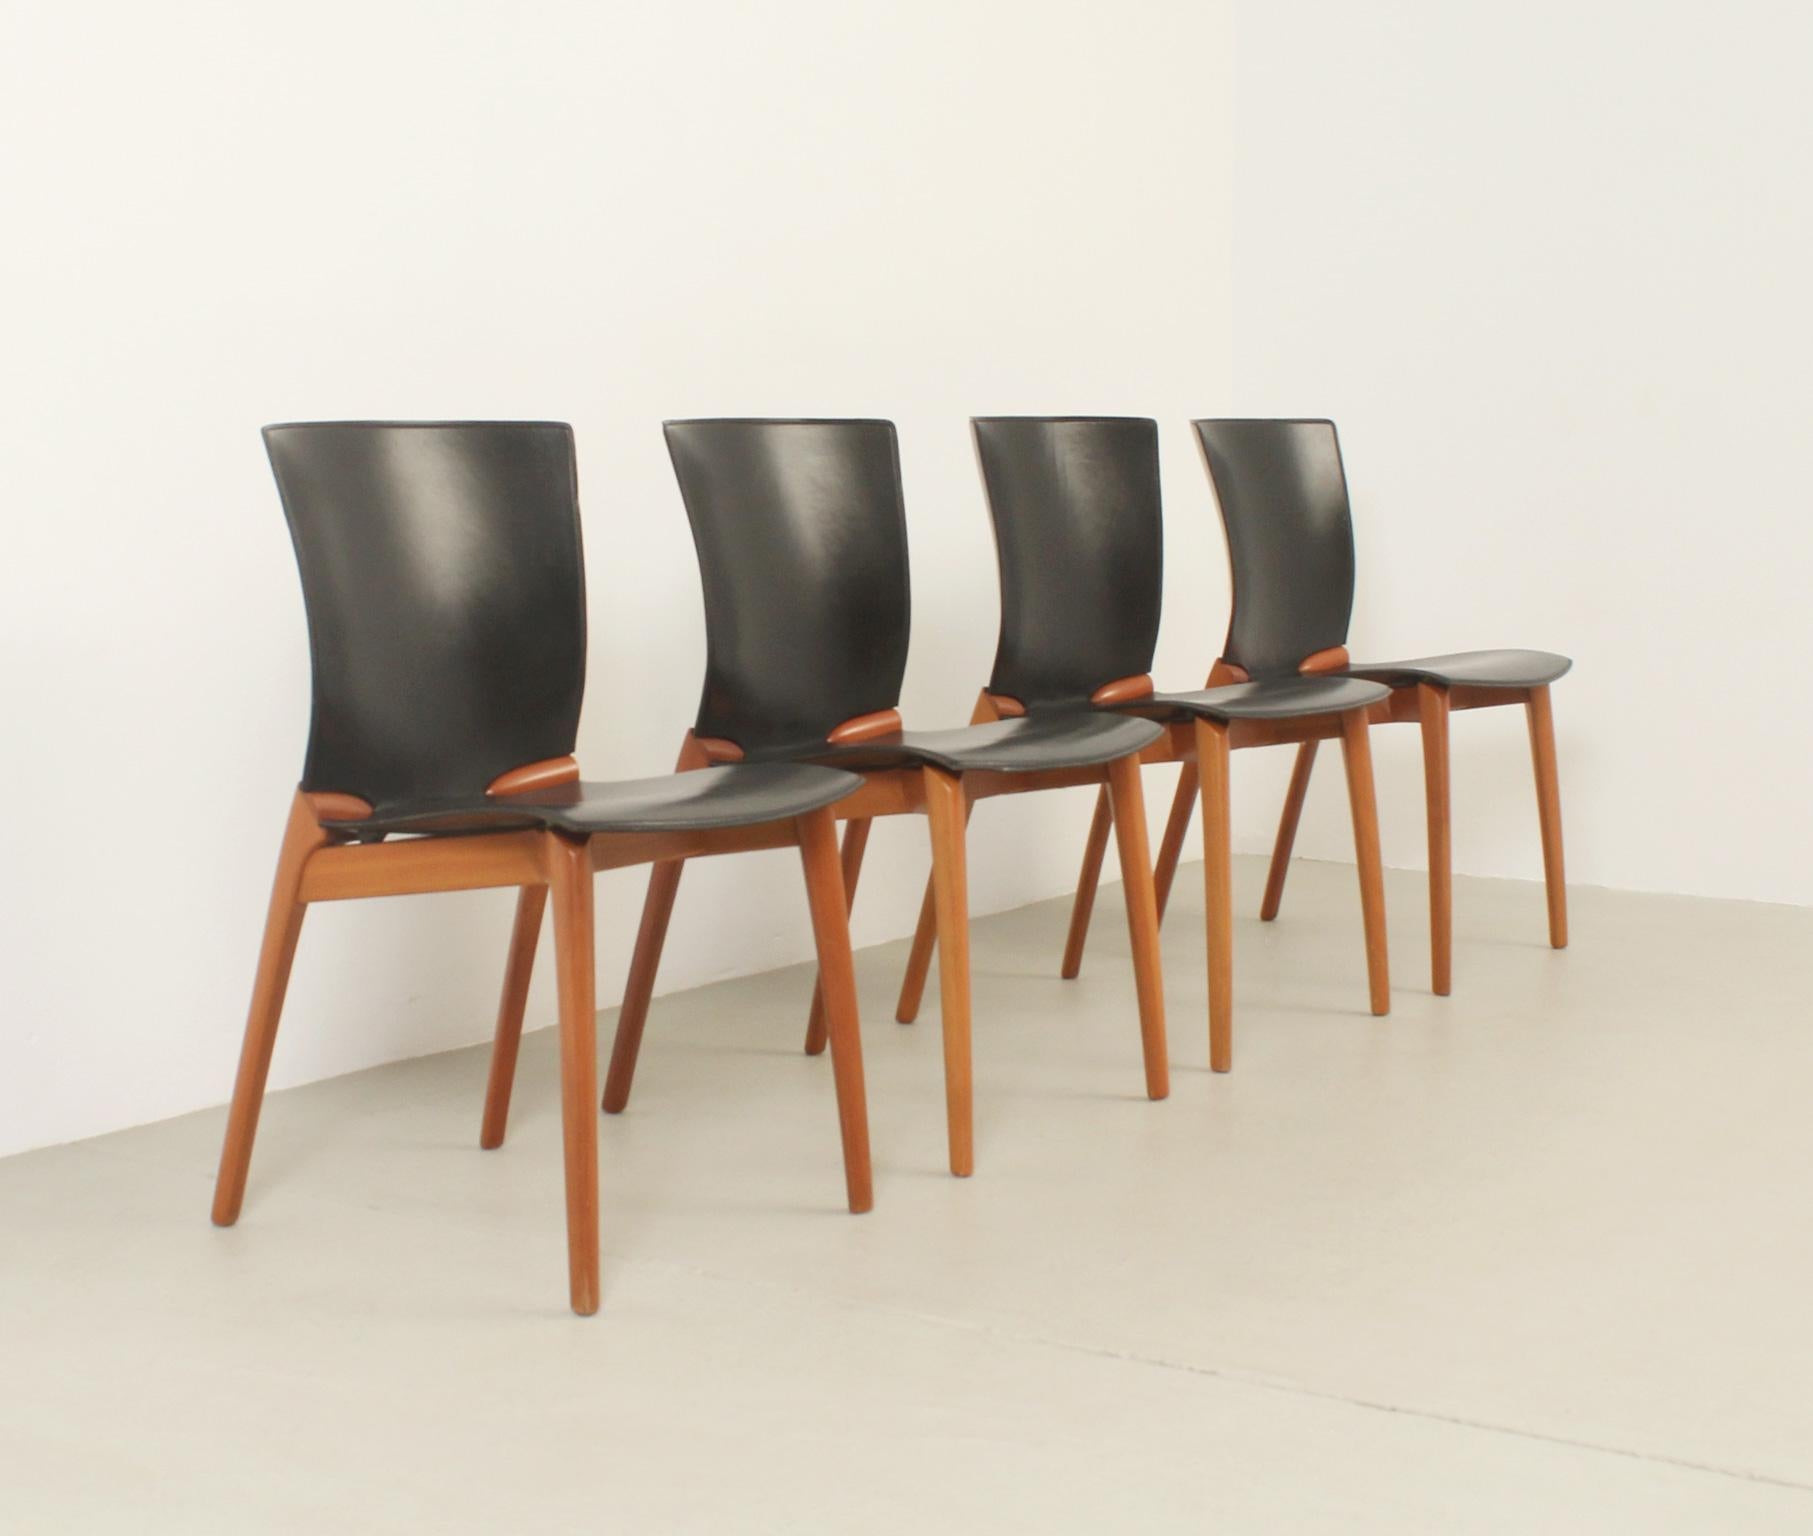 Ensemble de quatre chaises Cos conçues en 1994 par le designer espagnol Josep Lluscà pour Cassina, Italie. Structure en bois de cerisier et cuir noir. Signé avec le label Cassina.